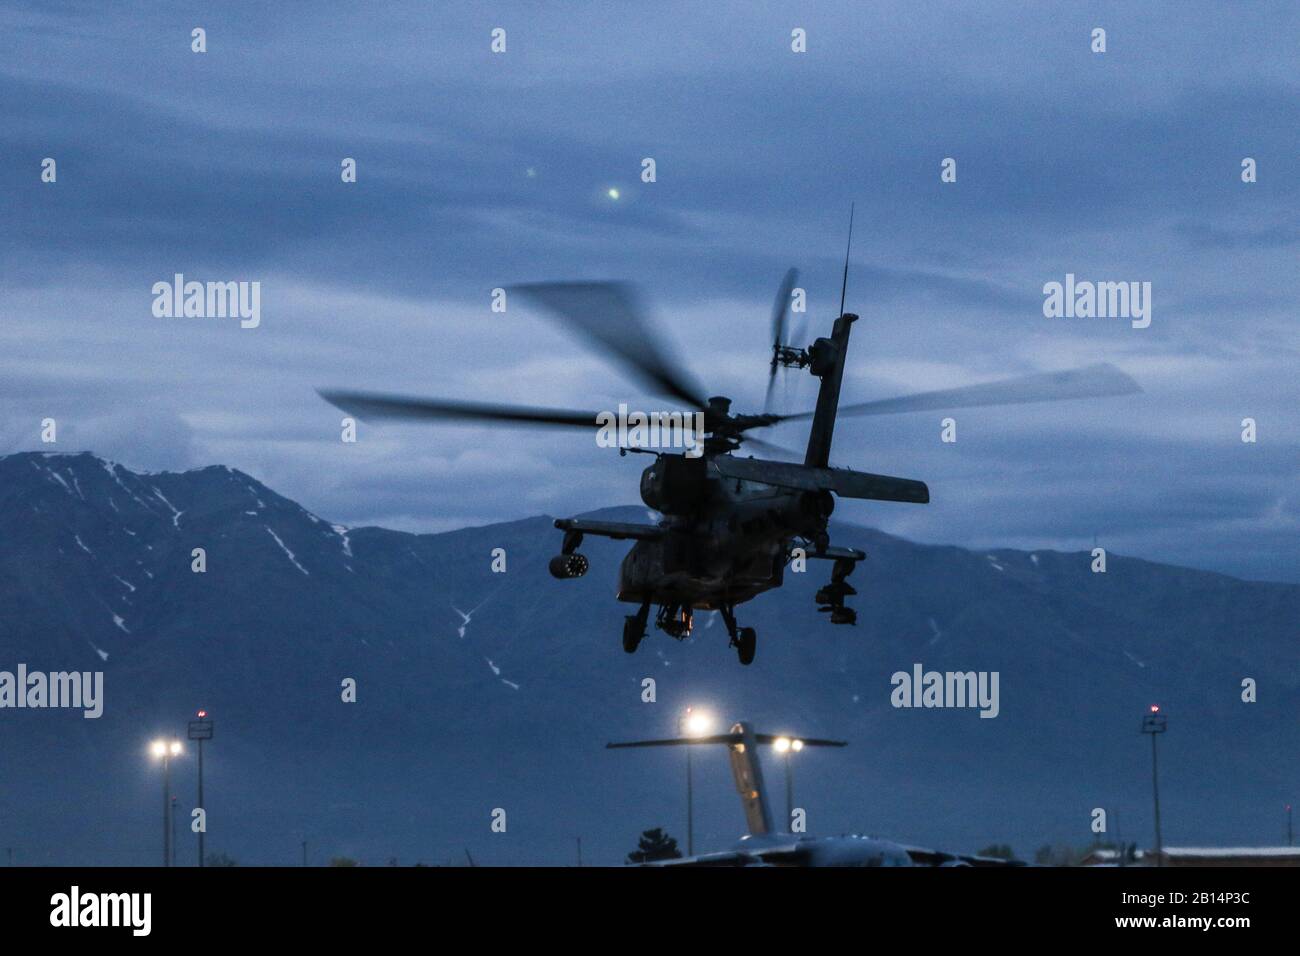 Un AH-64 prende il via in pronto a condurre le operazioni di aviazione a sostegno Di Operazione Freedom Sentinel e Resolute Support in Afghanistan, 14 aprile 2019. (STATI UNITI Foto dell'esercito di Capt Roxana Thompson) Foto Stock